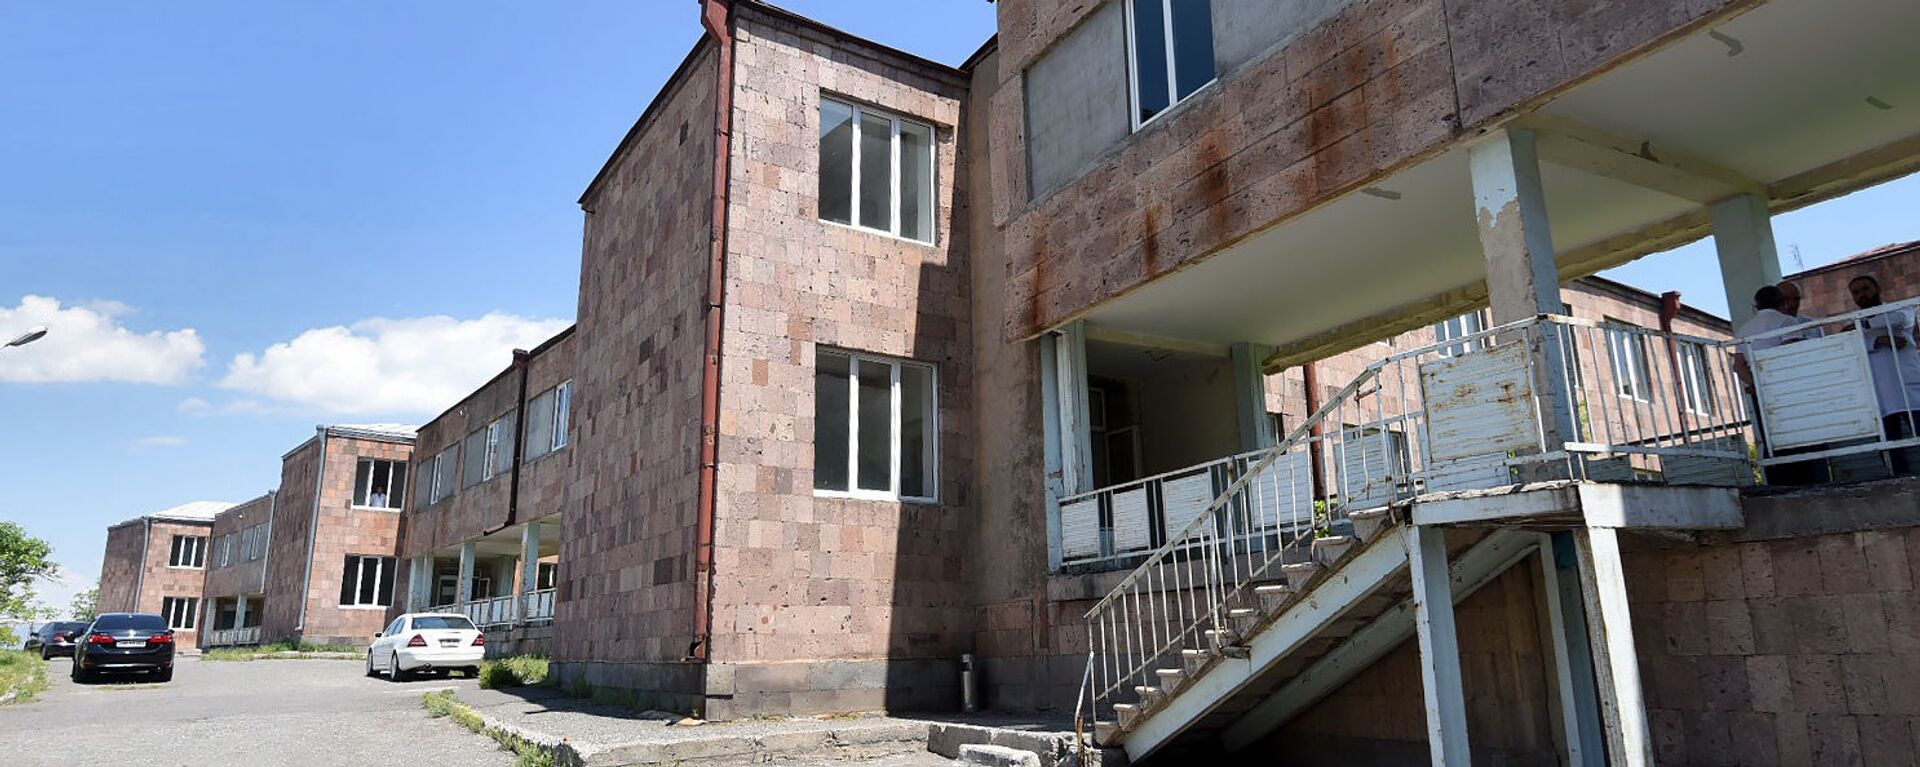 Здание Национального центра охраны психического здоровья - Sputnik Армения, 1920, 30.06.2021